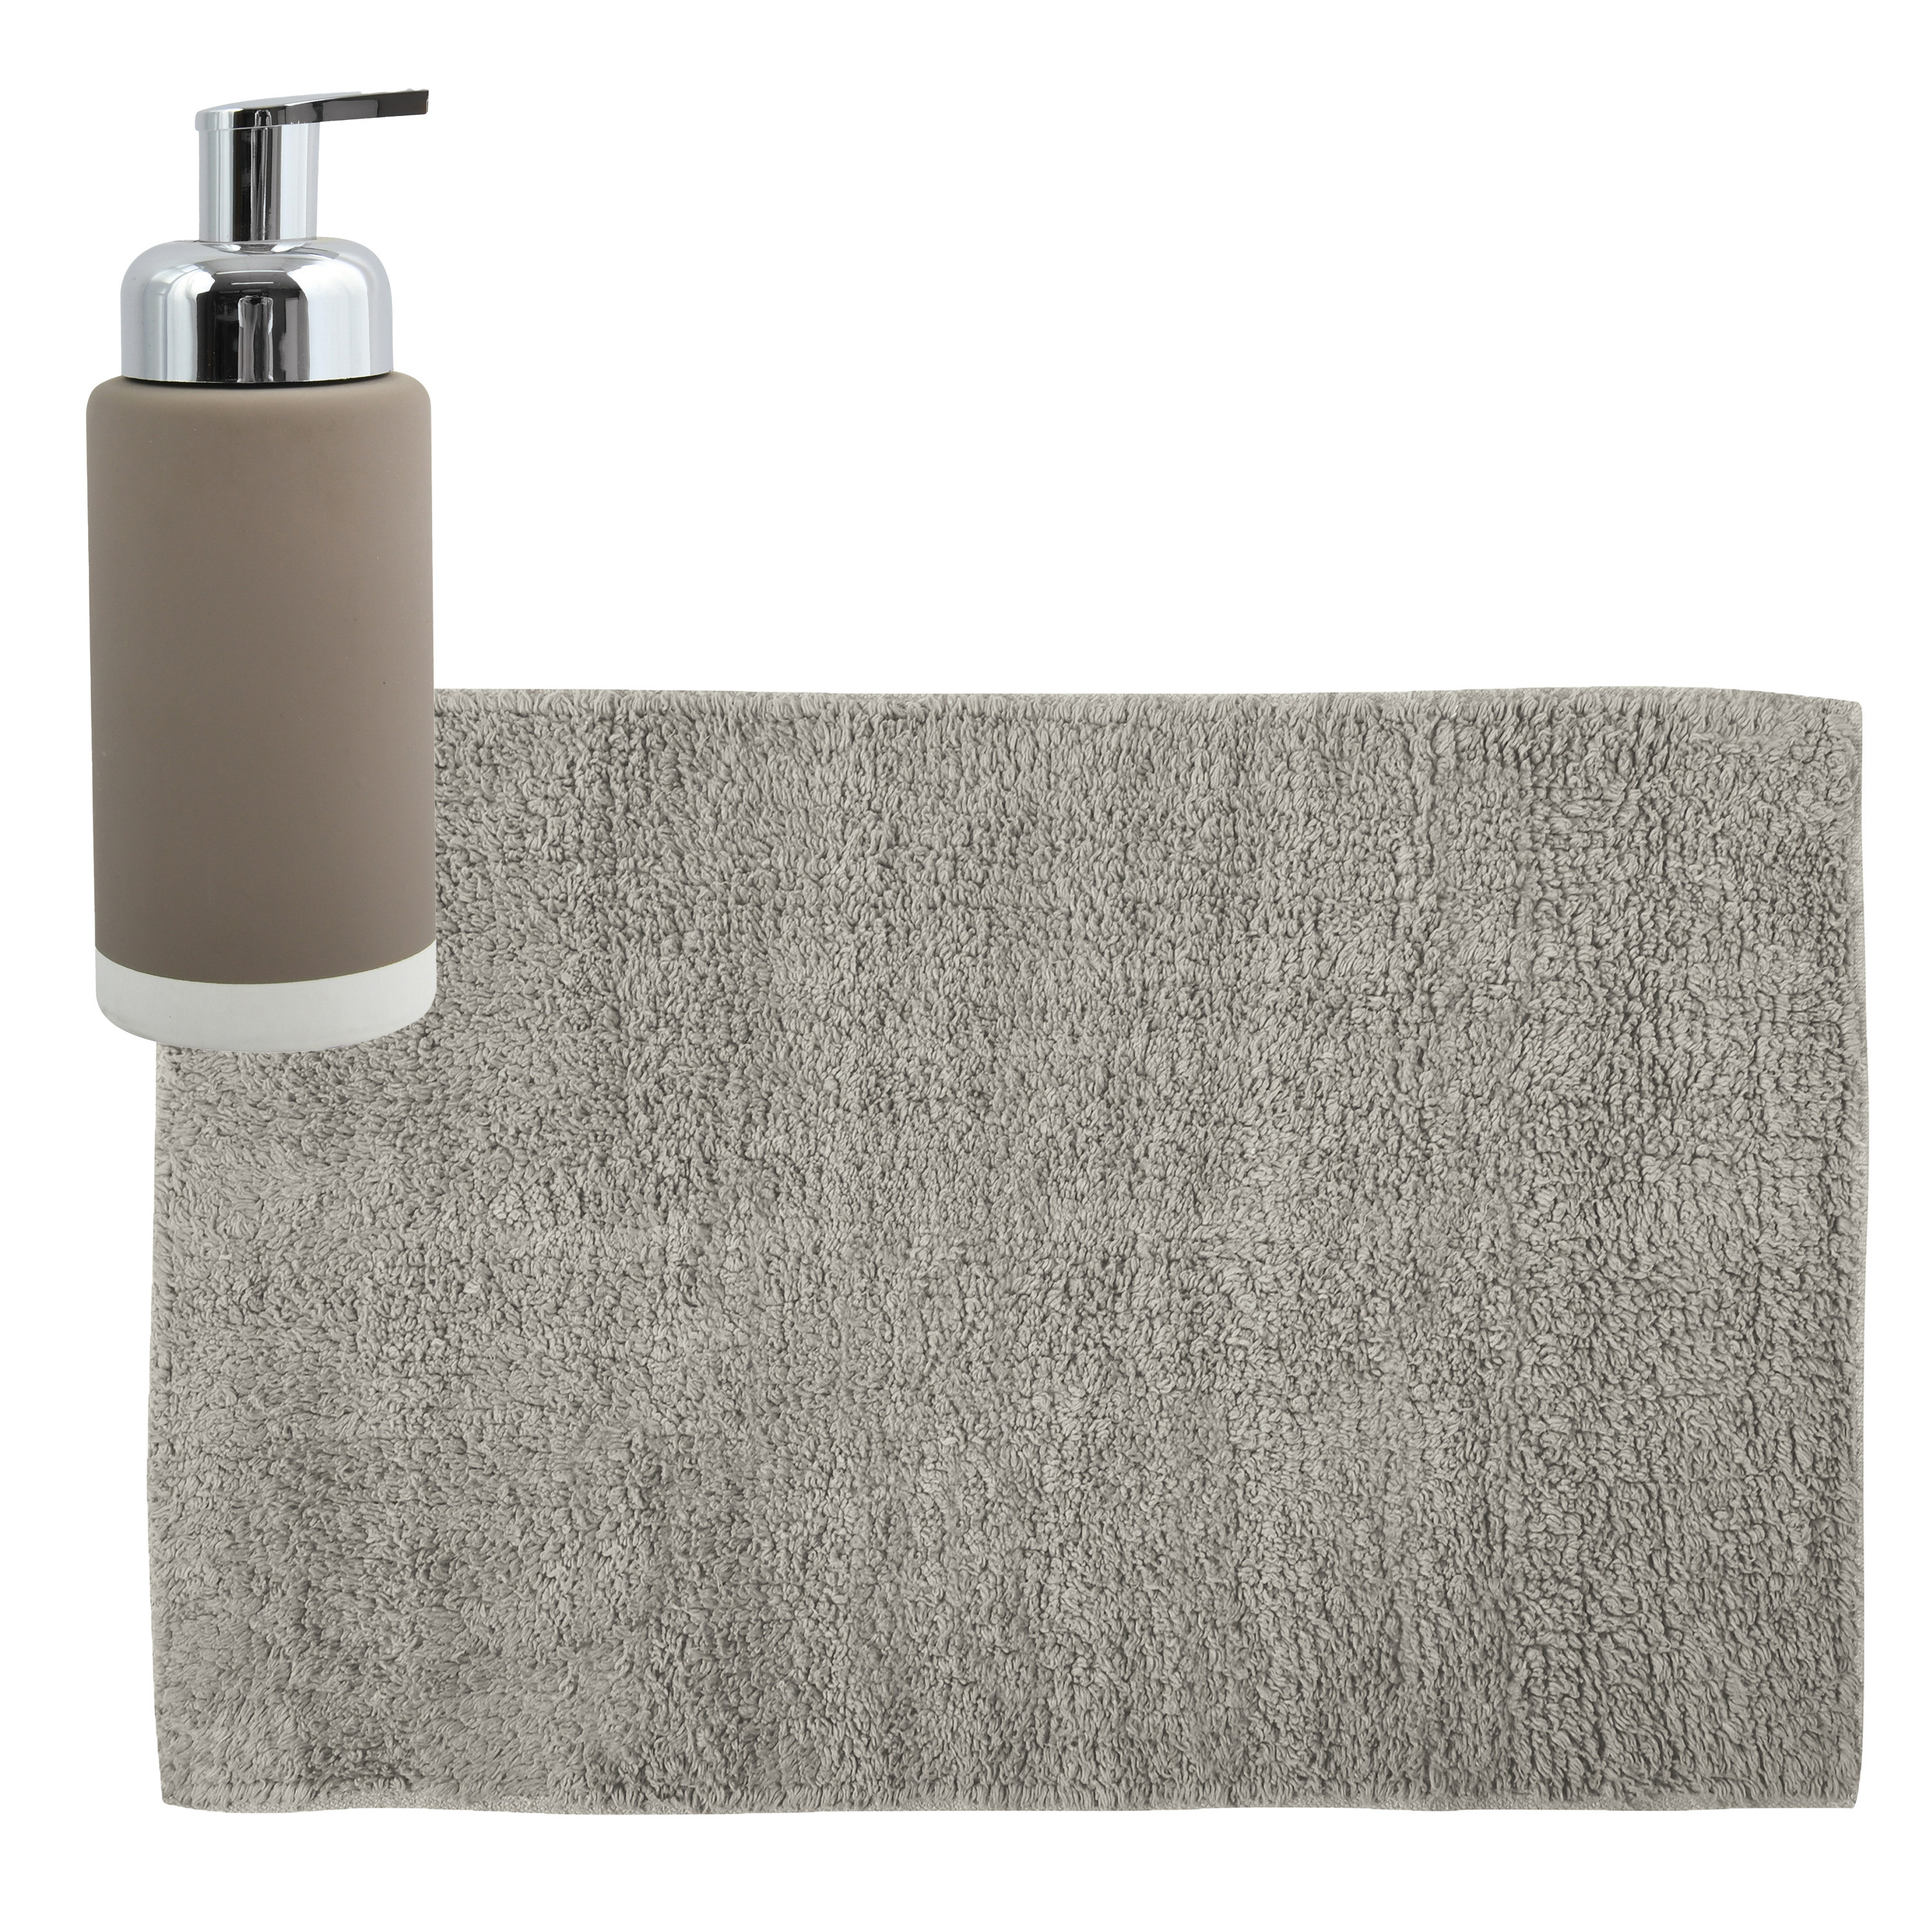 MSV badkamer droogloop mat-tapijt 40 x 60 cm met zelfde kleur zeeppompje 275 ml beige